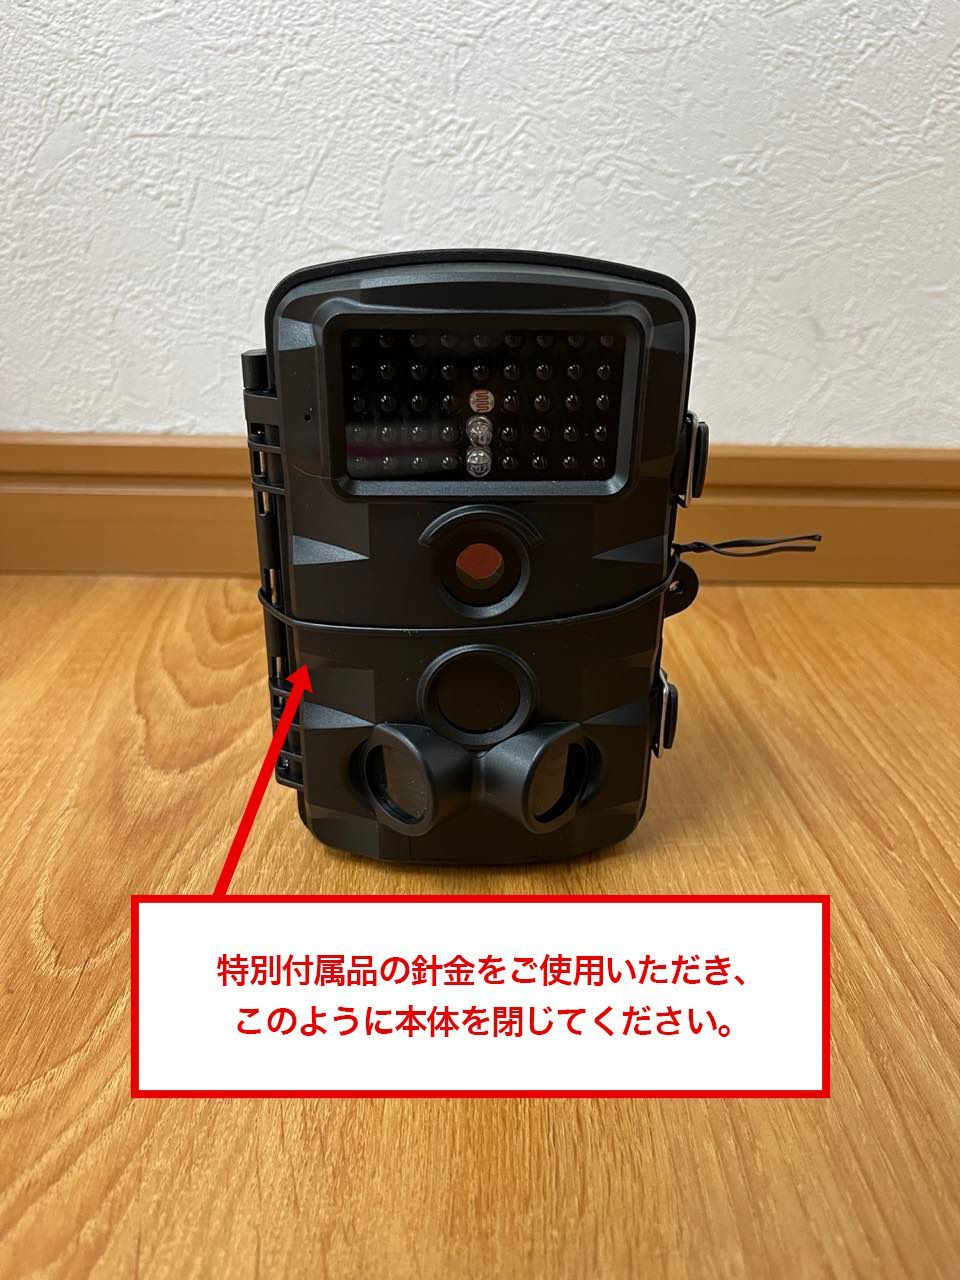 難あり 未使用品 SecuSTATION SC-ML62 トレイルカメラ 静止画-2